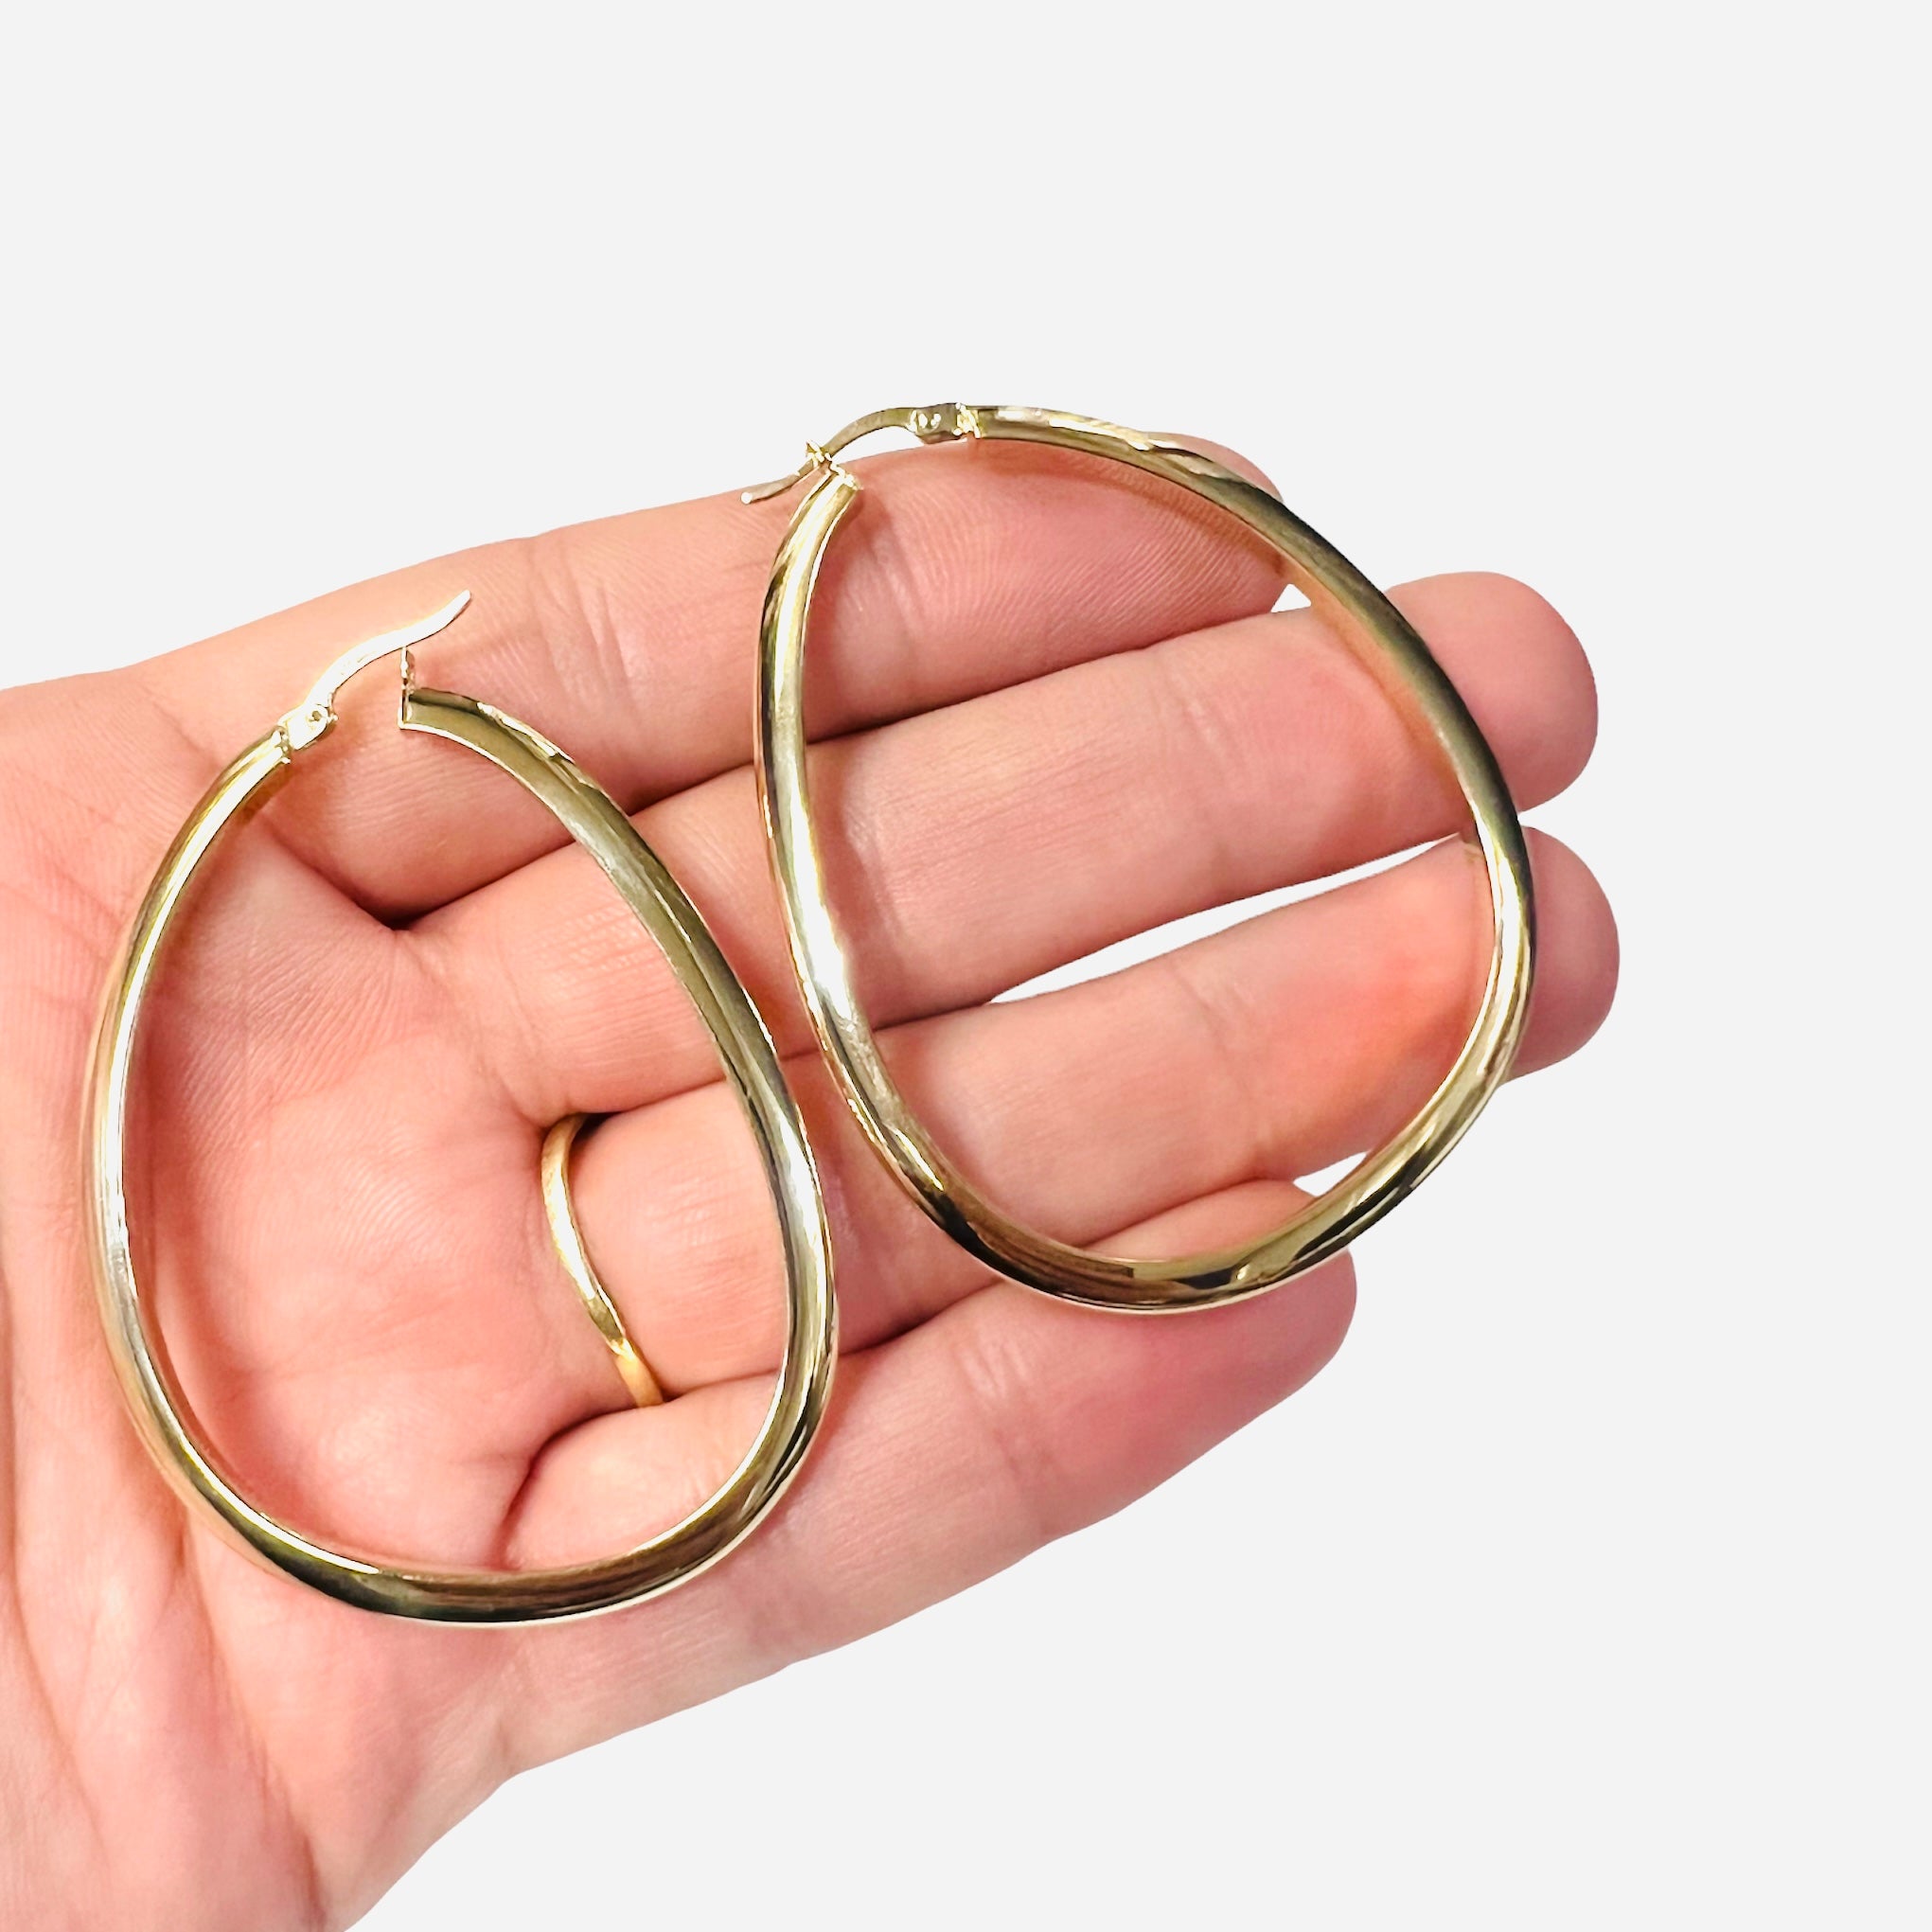 14K Gold Hoops Earrings 2.1”